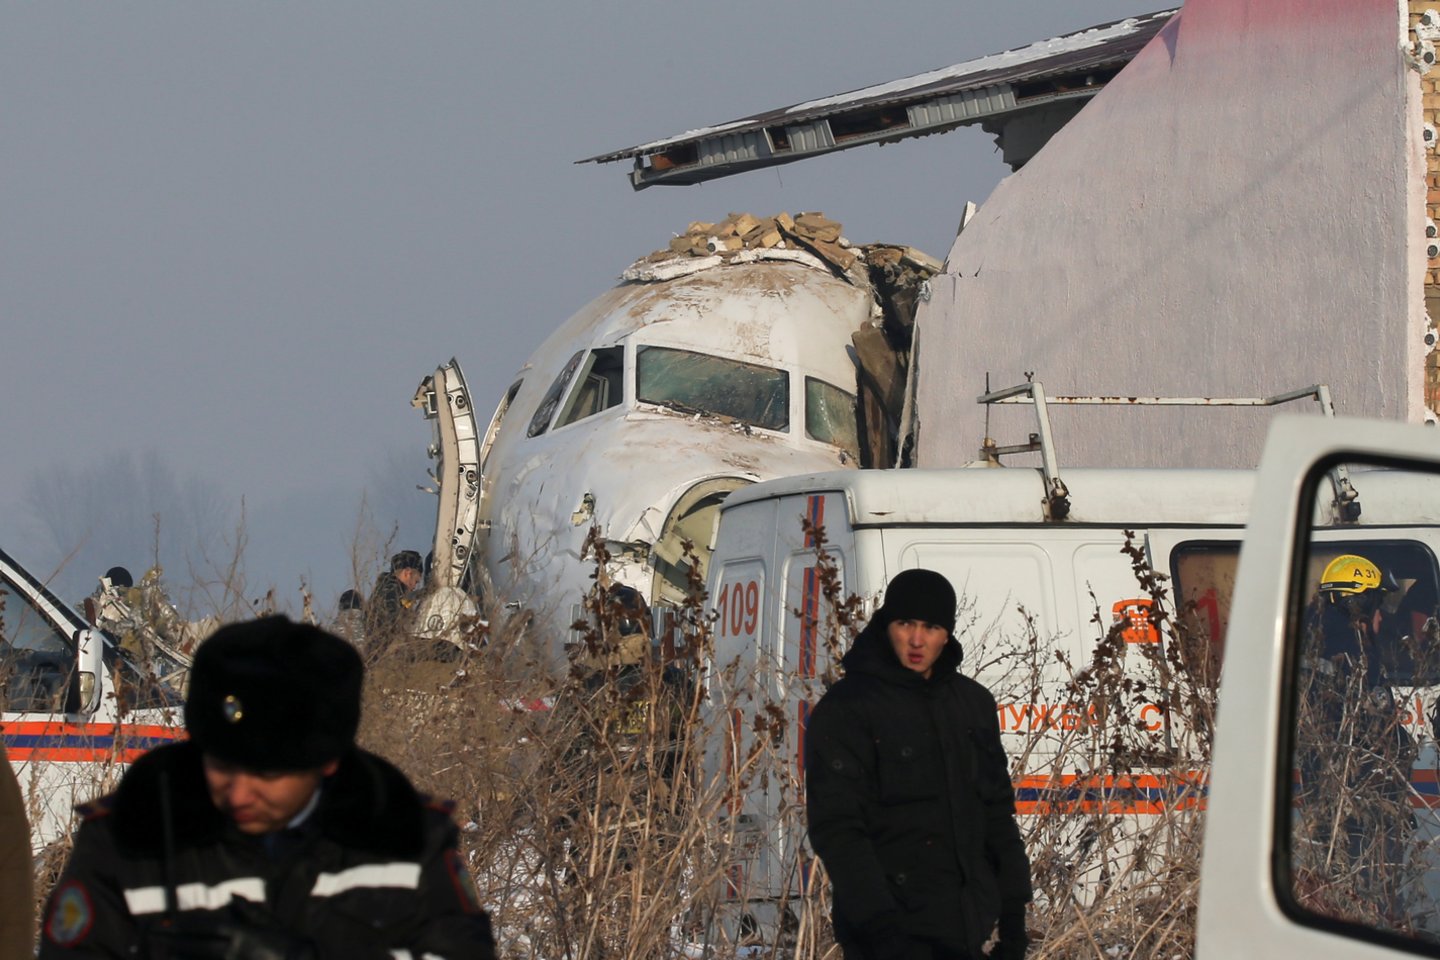 Ankstyvą penktadienio rytą Kazachstane sudužusio oro linijų „Bek Air“ lėktuvo „Fokker 100“ pilotai rengėsi įprastam skrydžiui ir prieš pakylant nefiksavo nieko neįprasto.<br>Reuters/Scanpix nuotr.